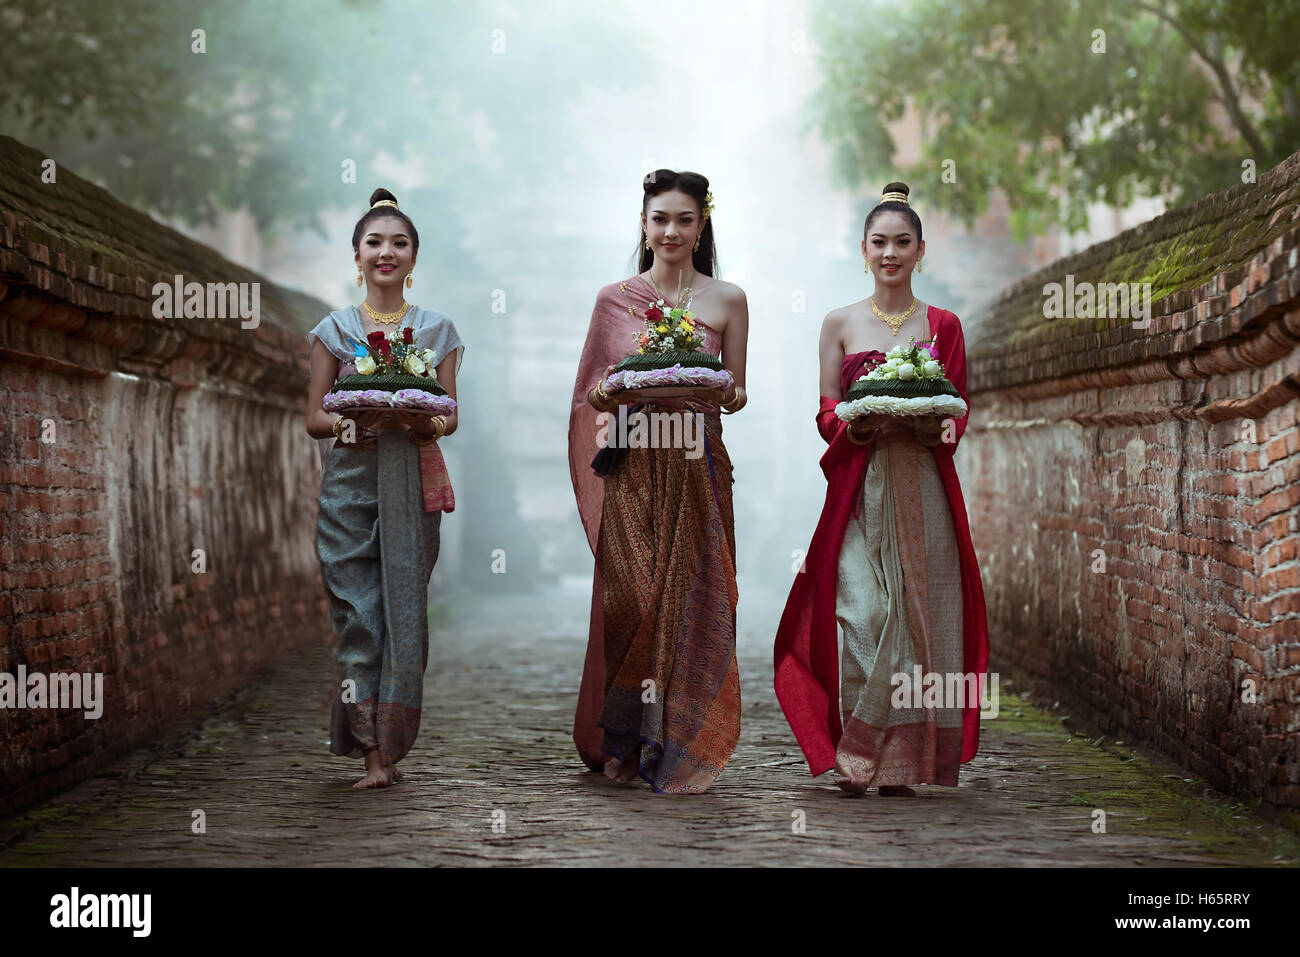 Noppamas Queen Contest Loy Kratong en tradition. Femme thaïlandaise en thaï traditionnelle robe. Banque D'Images